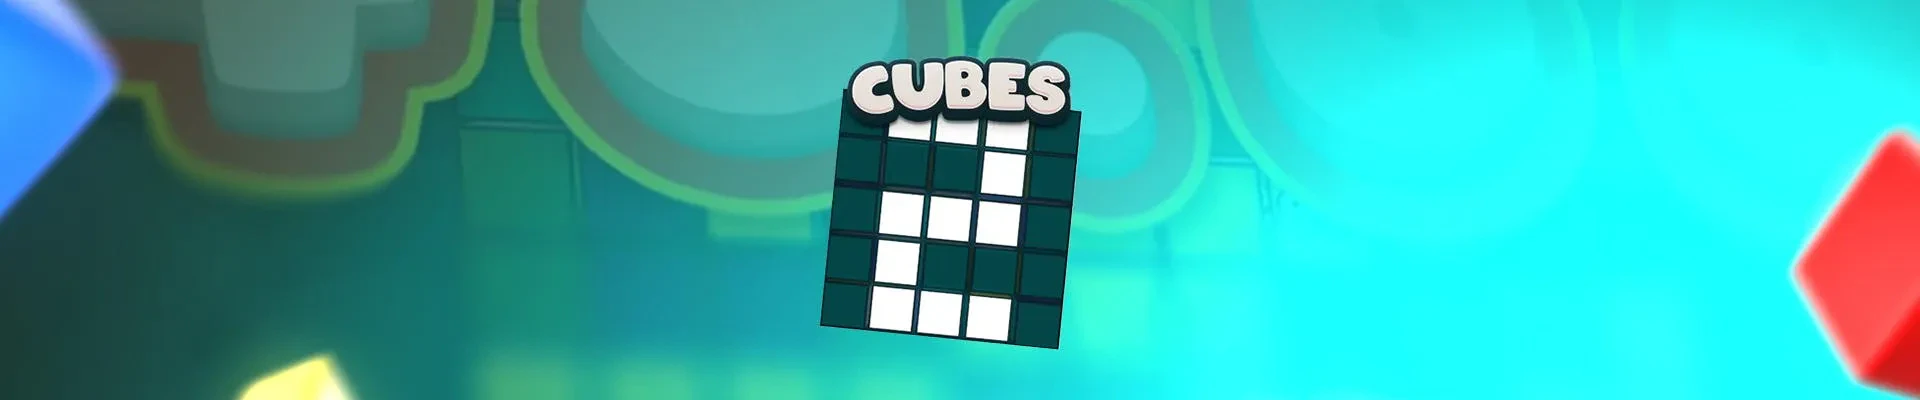 header cubes 2